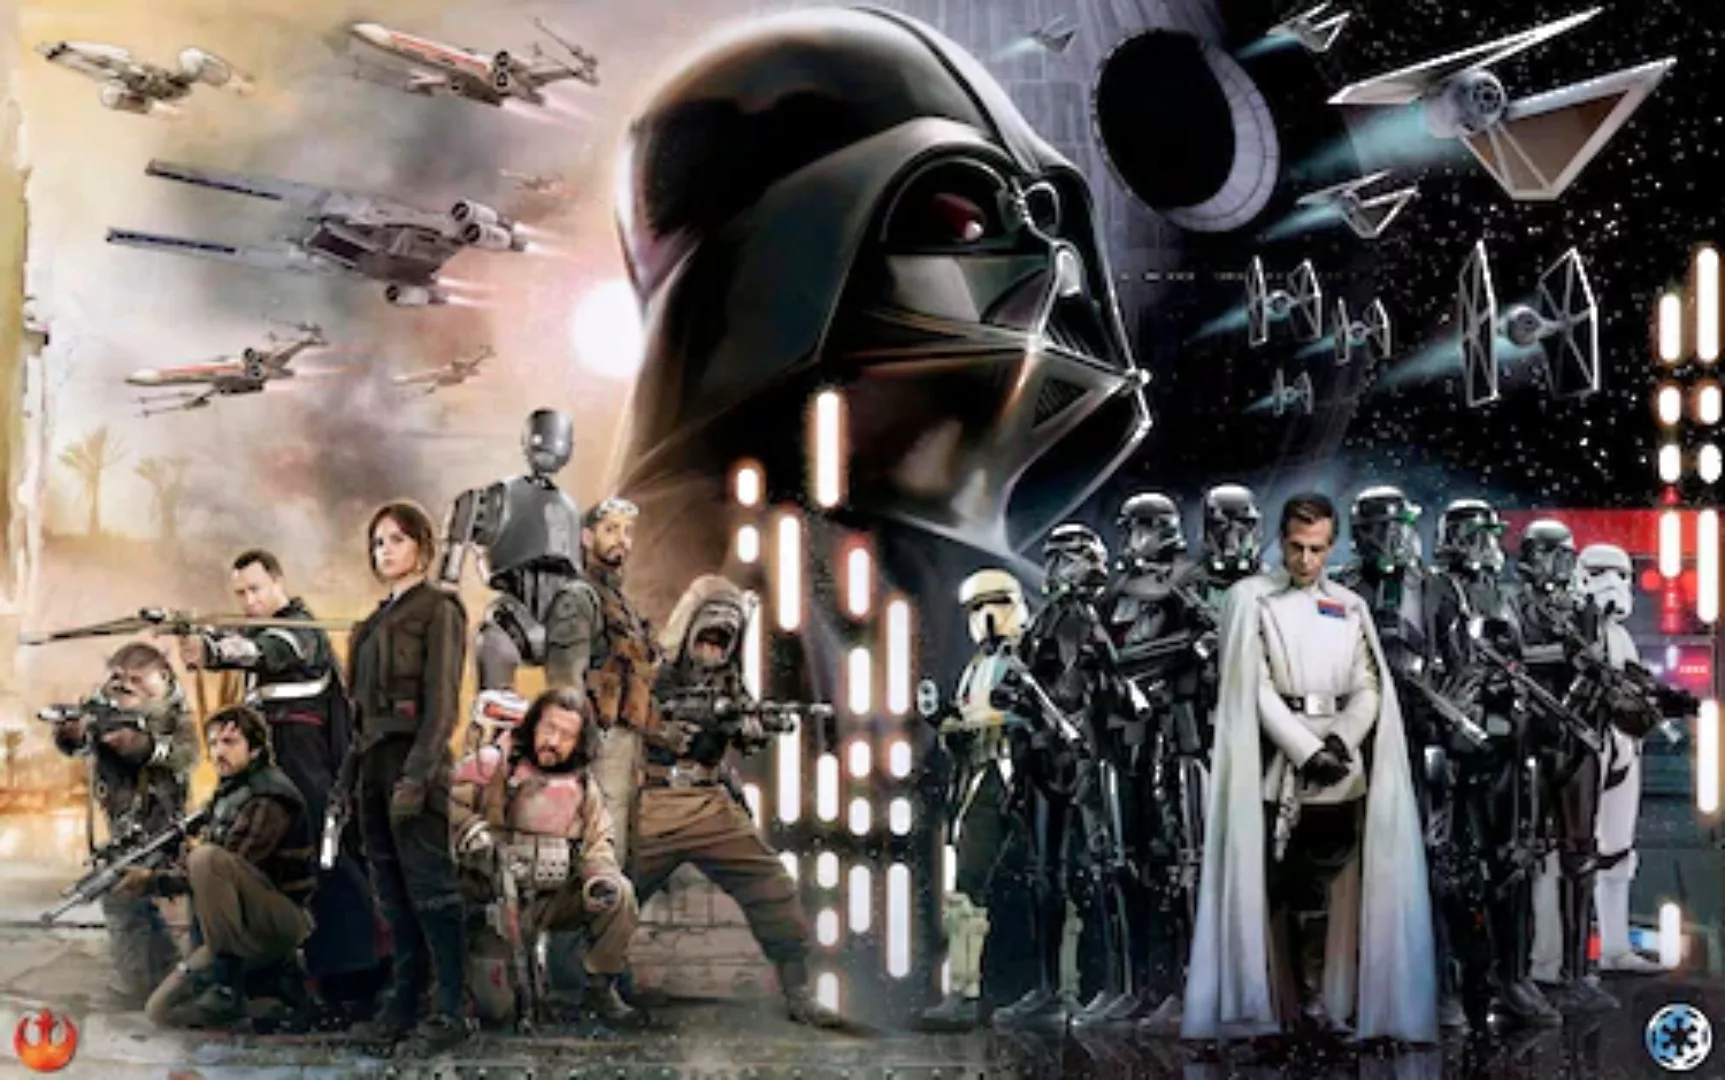 KOMAR Vlies Fototapete - Star Wars Collage - Größe 400 x 250 cm mehrfarbig günstig online kaufen